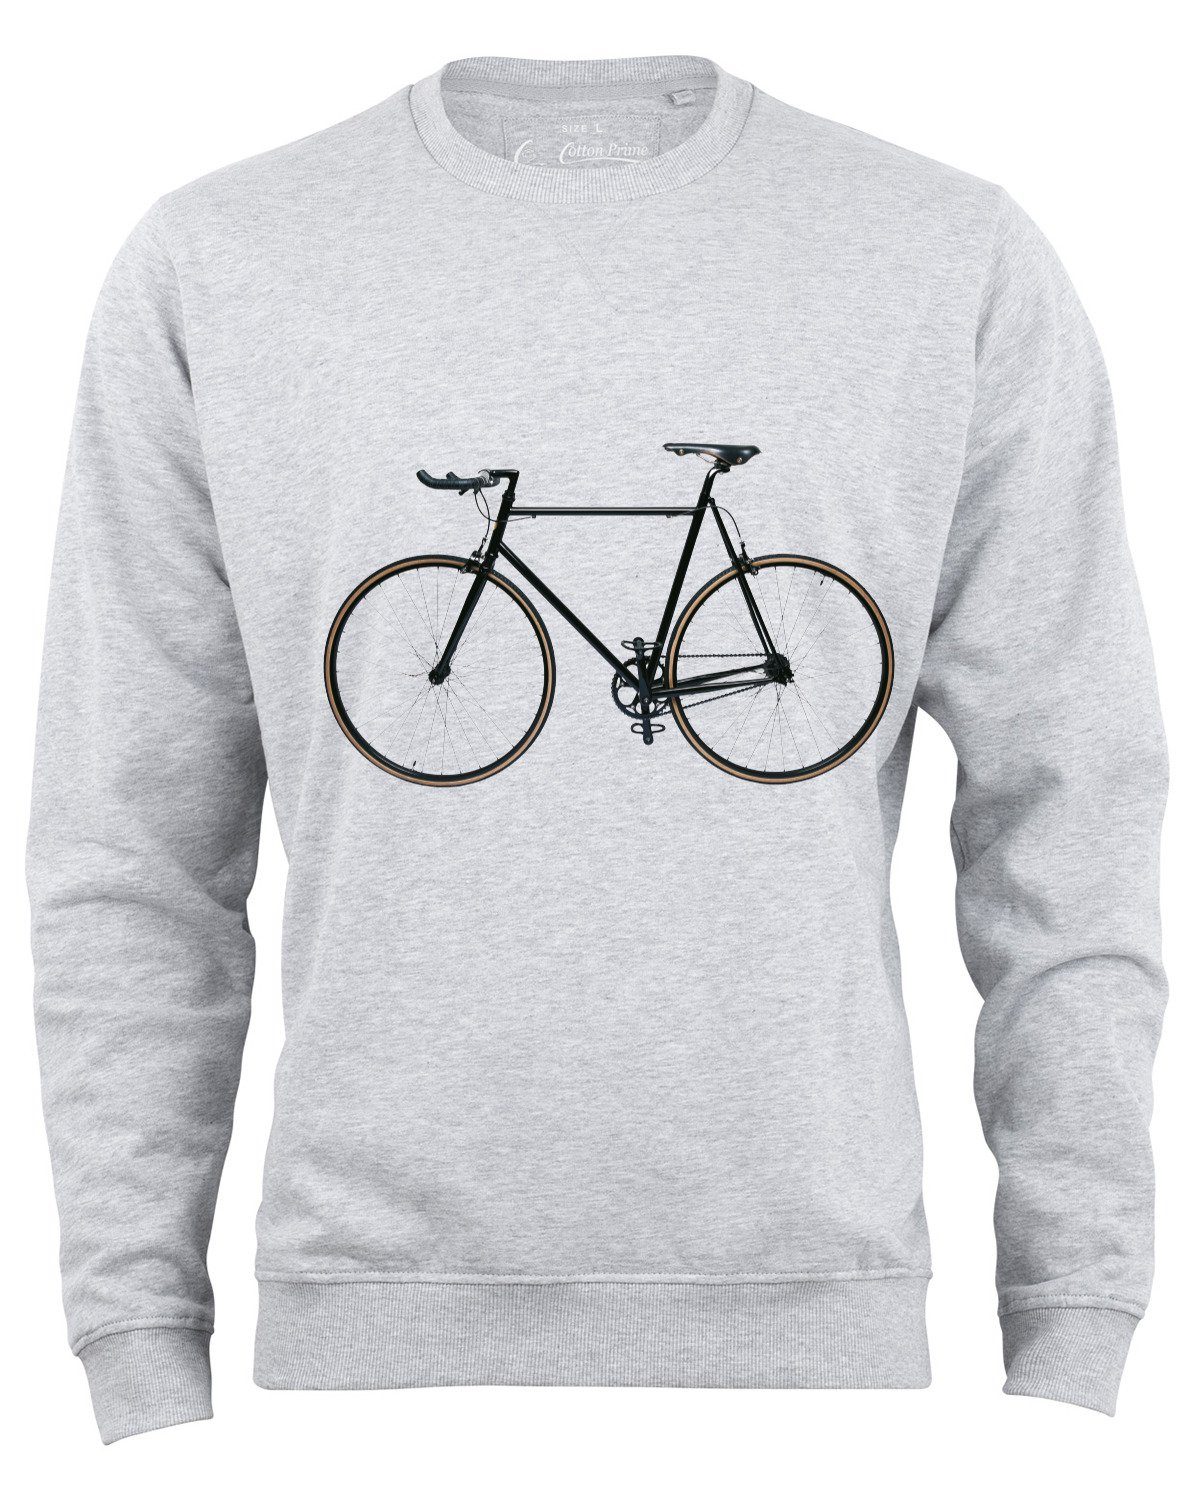 Cotton Prime® Sweatshirt Bike-Fahrrad mit weichem Innenfleece Grau-Melange | Sweatshirts